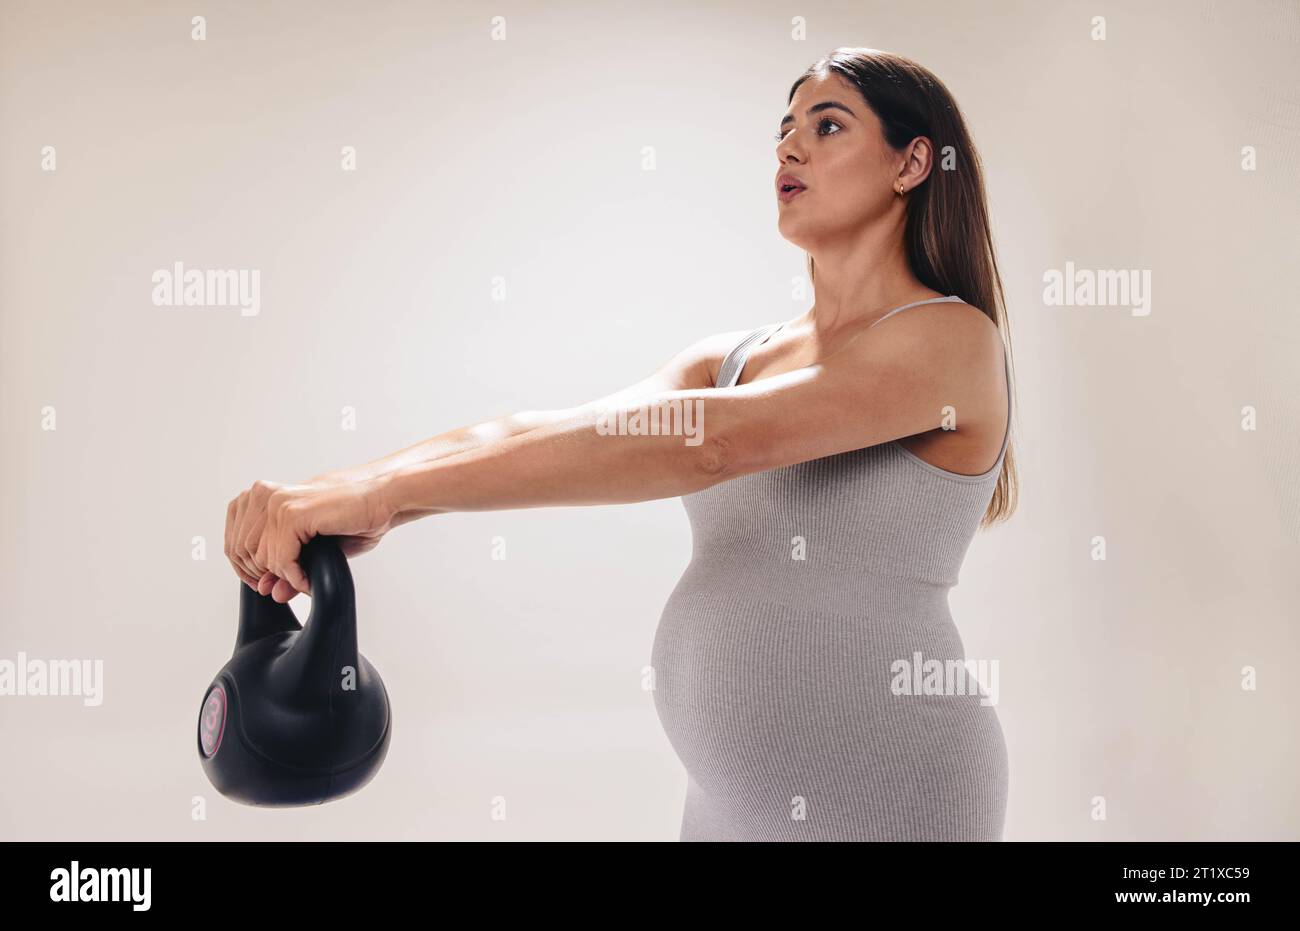 la donna incinta nel suo terzo trimestre si concentra sul fitness e il benessere. Solleva pesi, stretches ed esercizi per un corpo sano durante la gravidanza Foto Stock